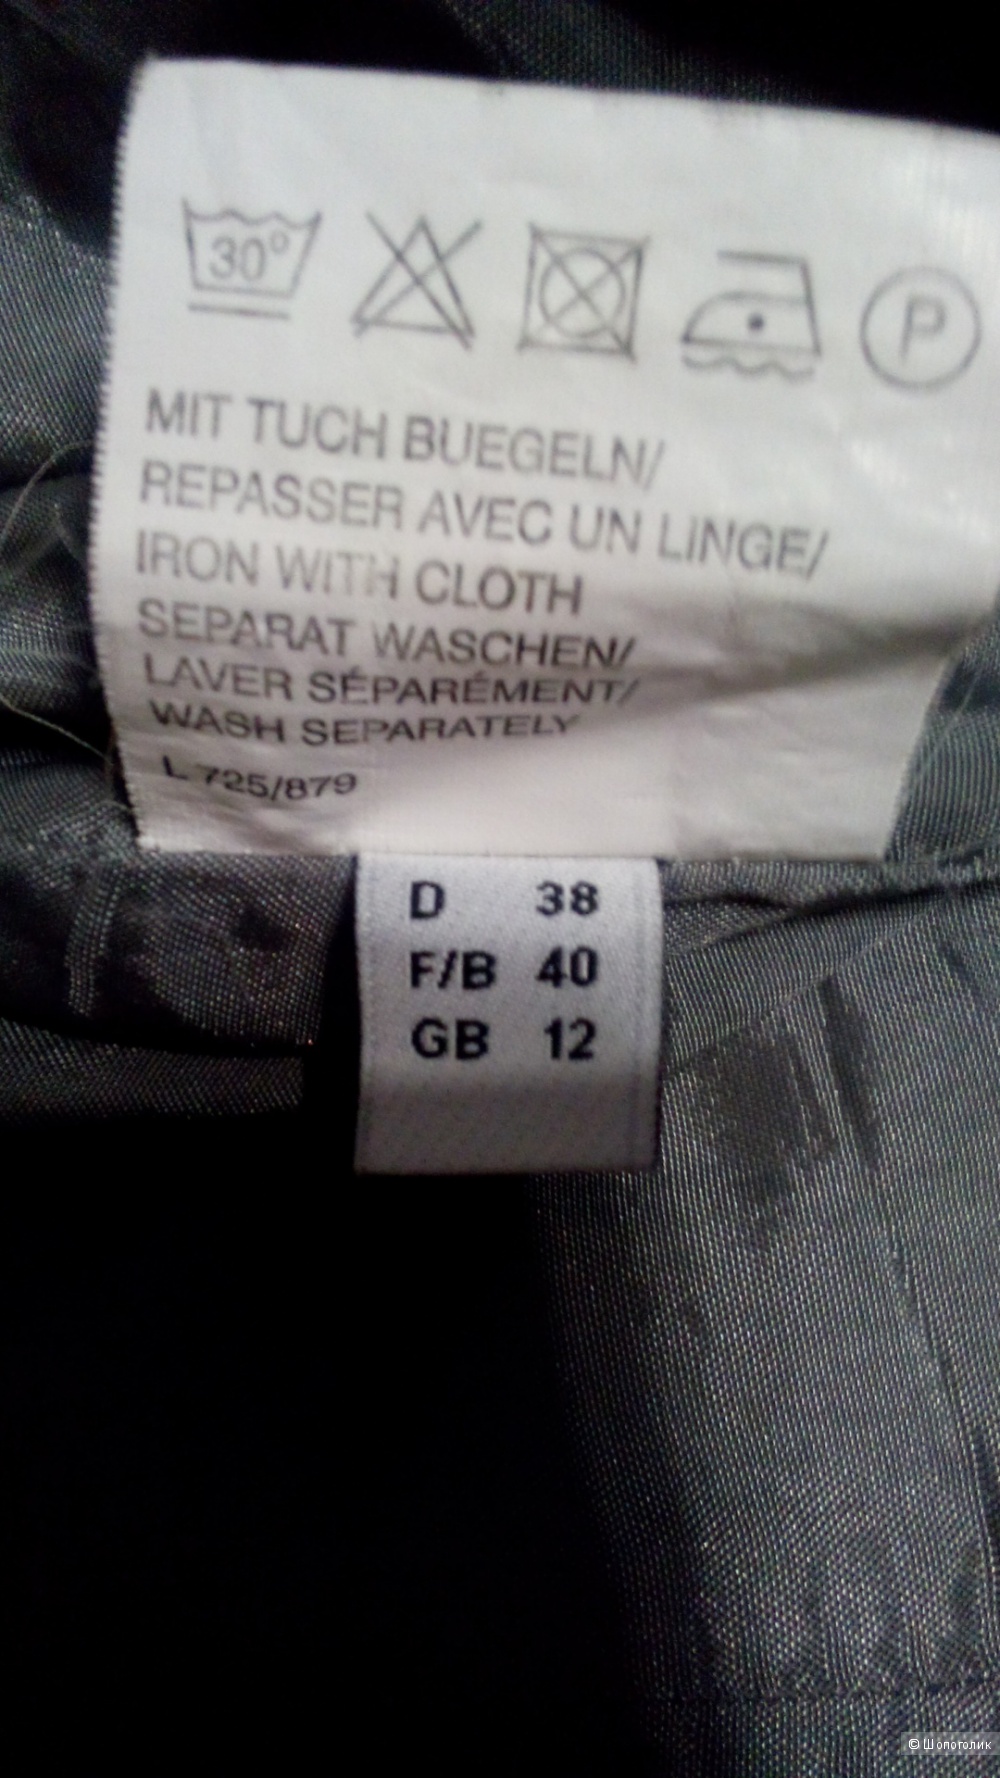 Пуховик-пальто длинный MADELENE Германия в размере 38D 12 GB(46-48)